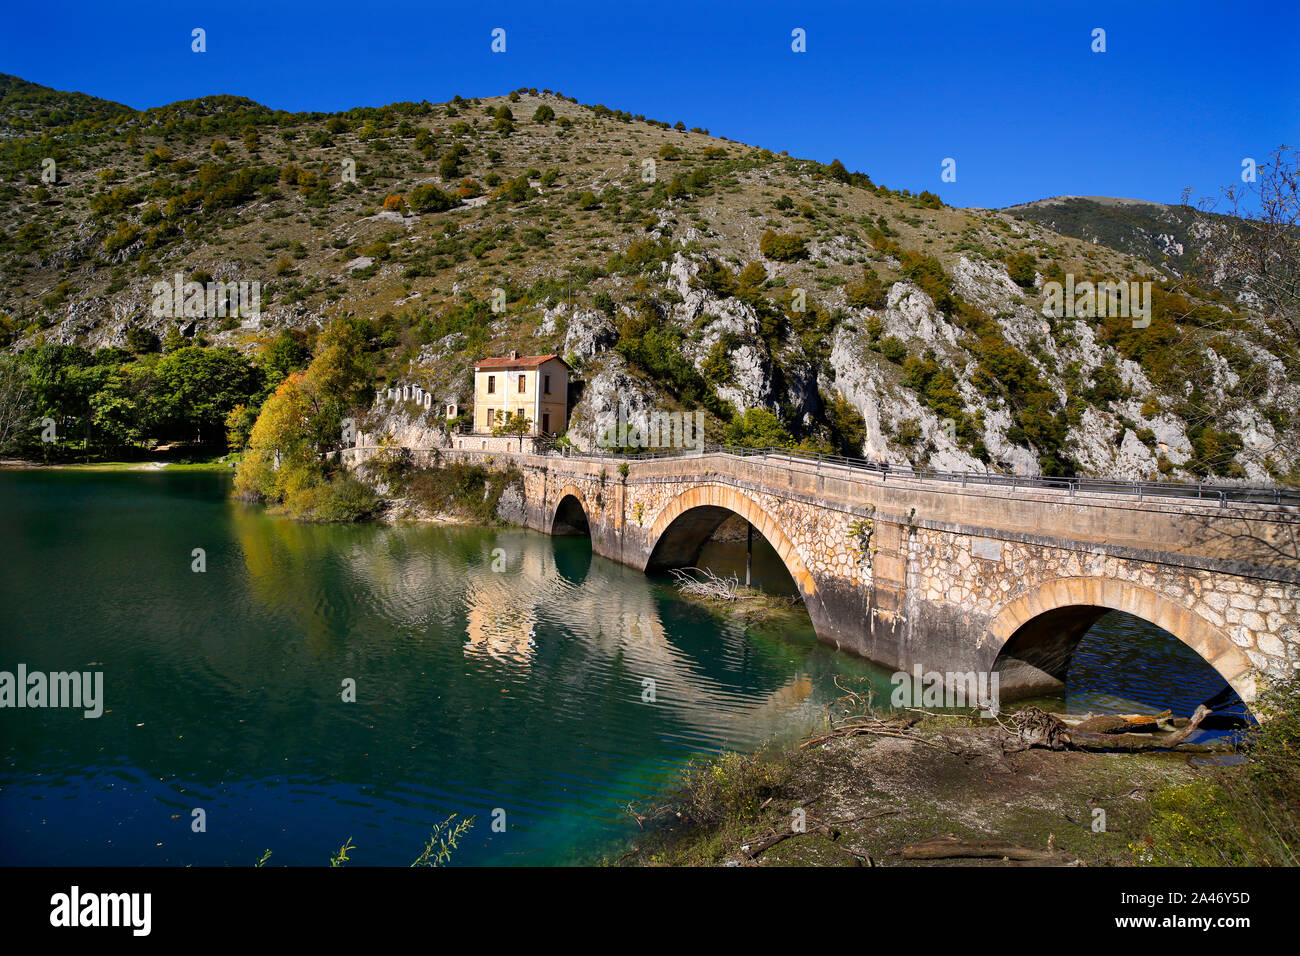 Eremo di San Domenico sul Lago di San Domenico nei pressi di Villalago, Abruzzo, Italia. Il ponte è il Ponte Don Serafino Rossi. Foto Stock